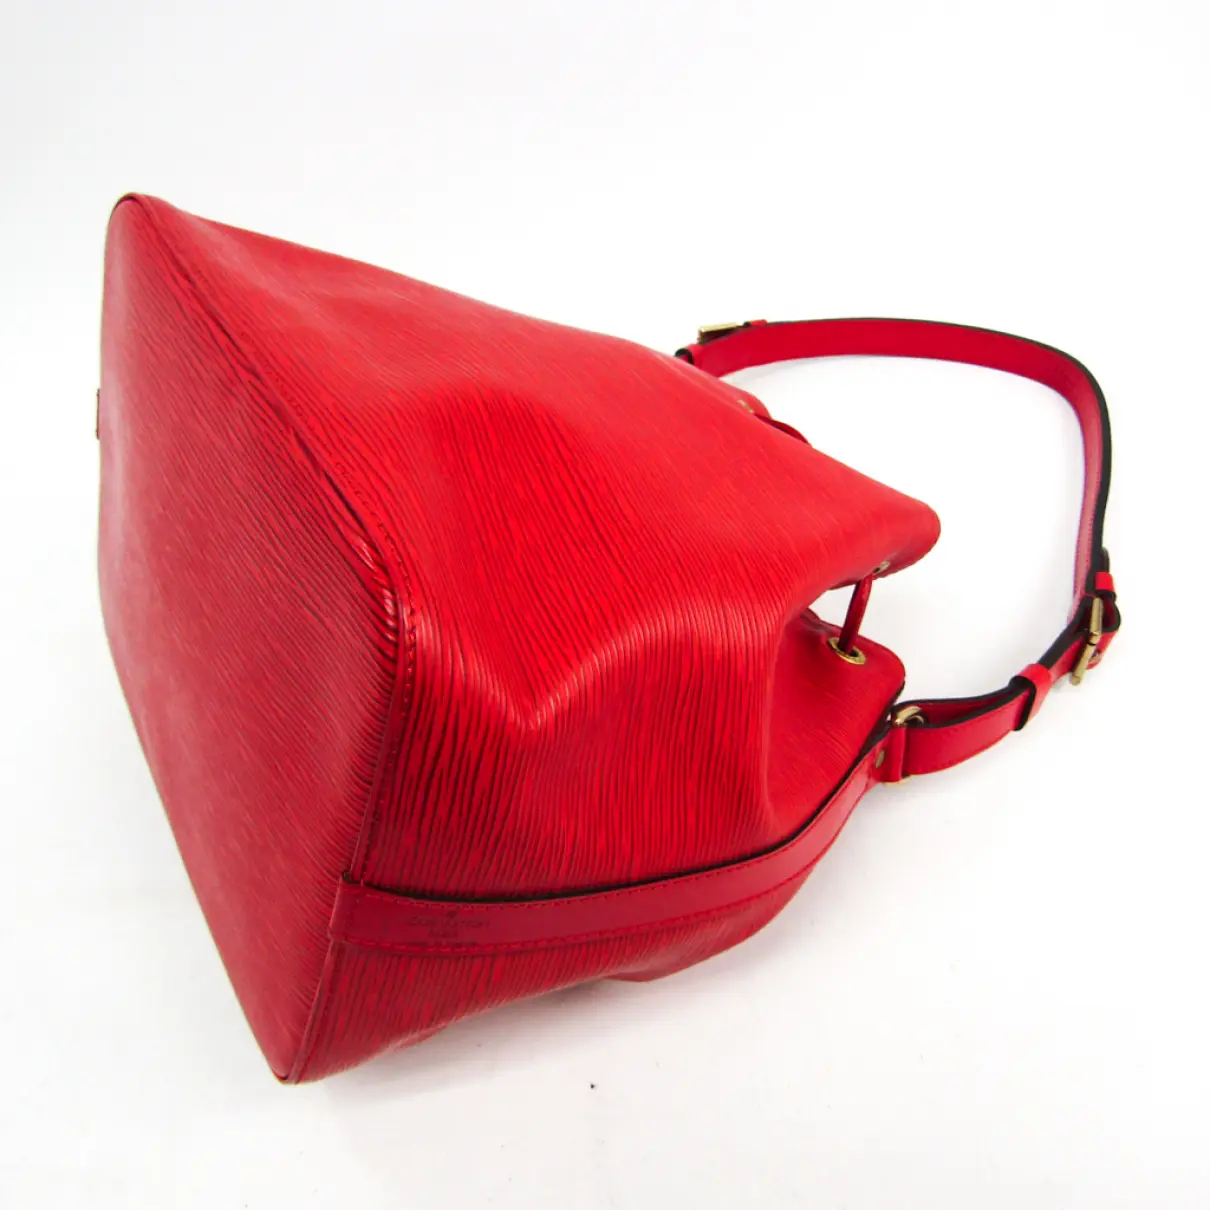 Buy Louis Vuitton Noe leather handbag online